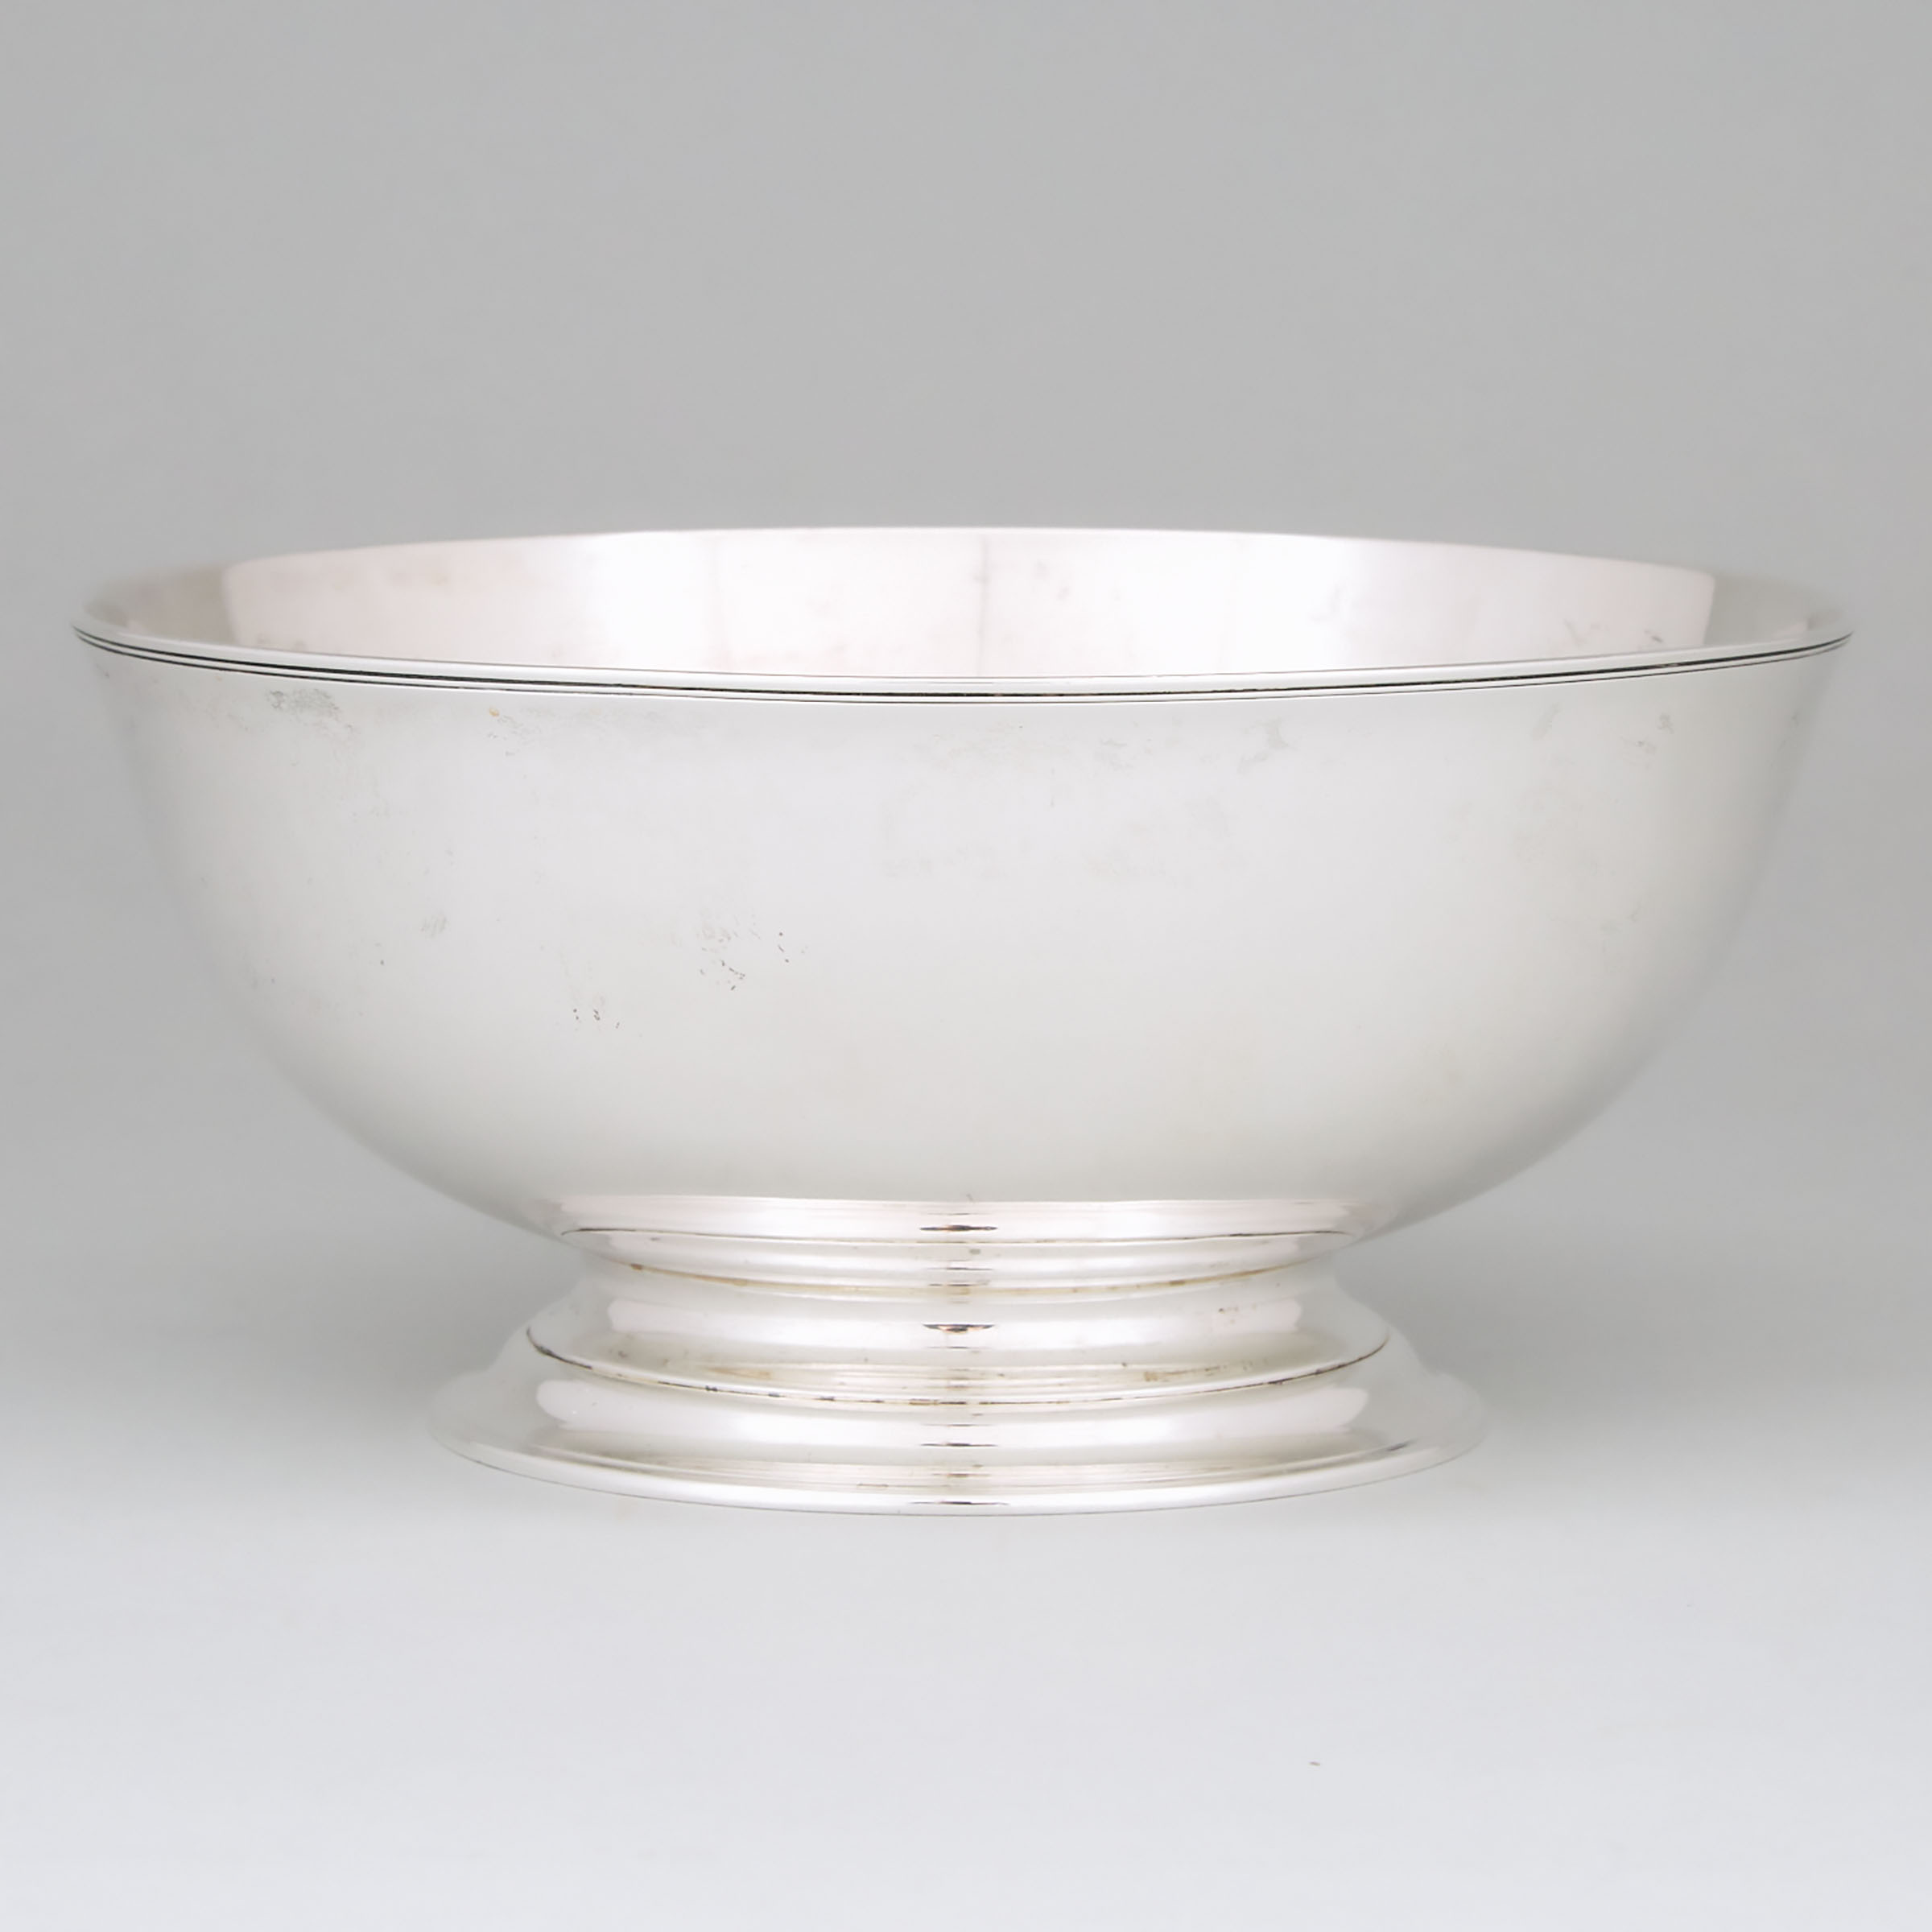 American Silver 'Ephraim Brasher' Bowl, Tiffany & Co., New York, N.Y., c.1907-38